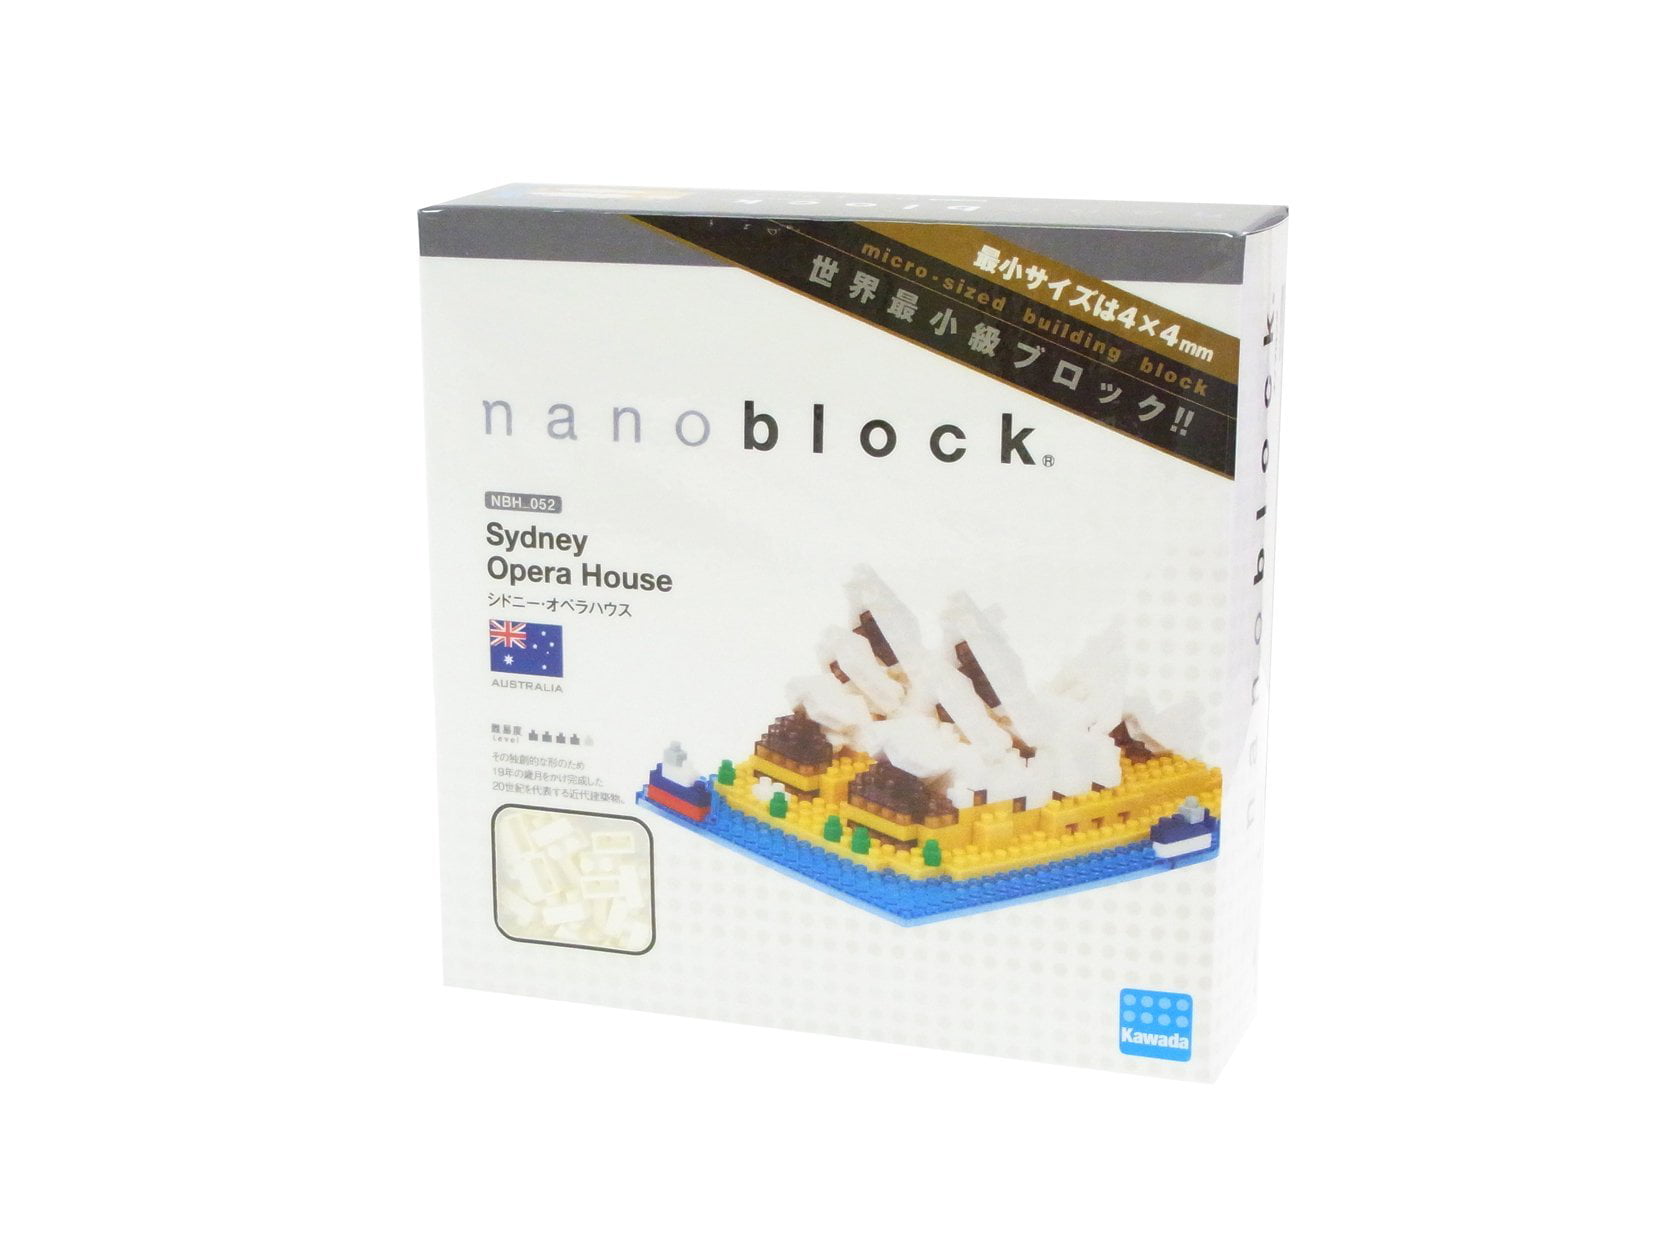 Sydney Opera House Nanoblock 